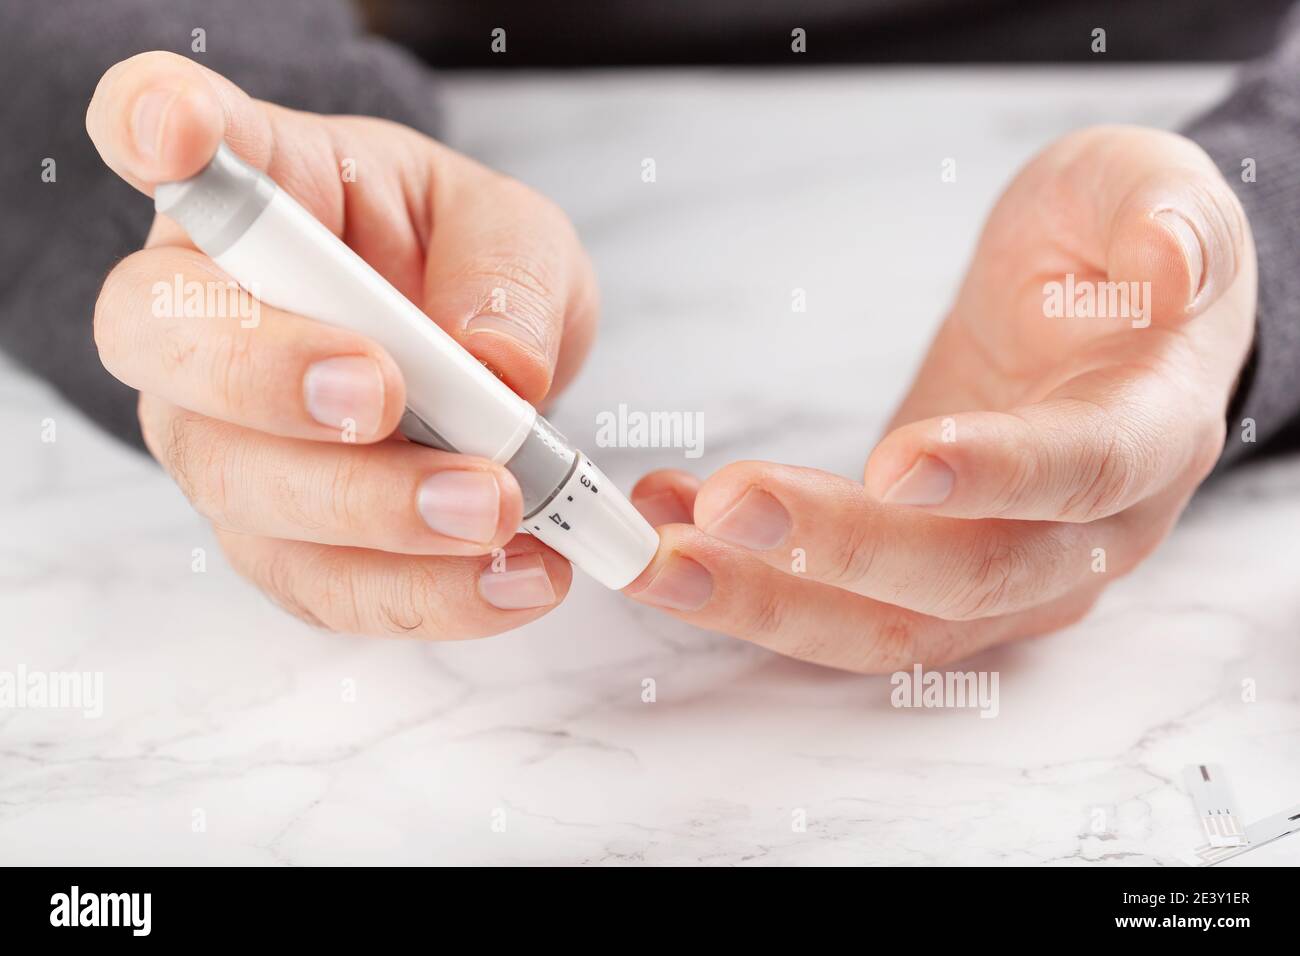 mains de l'homme utilisant lancet sur le doigt pour vérifier le taux de  sucre ou de cétones dans le sang par le glucomètre. médecine diabète keto  régime de soins de santé à